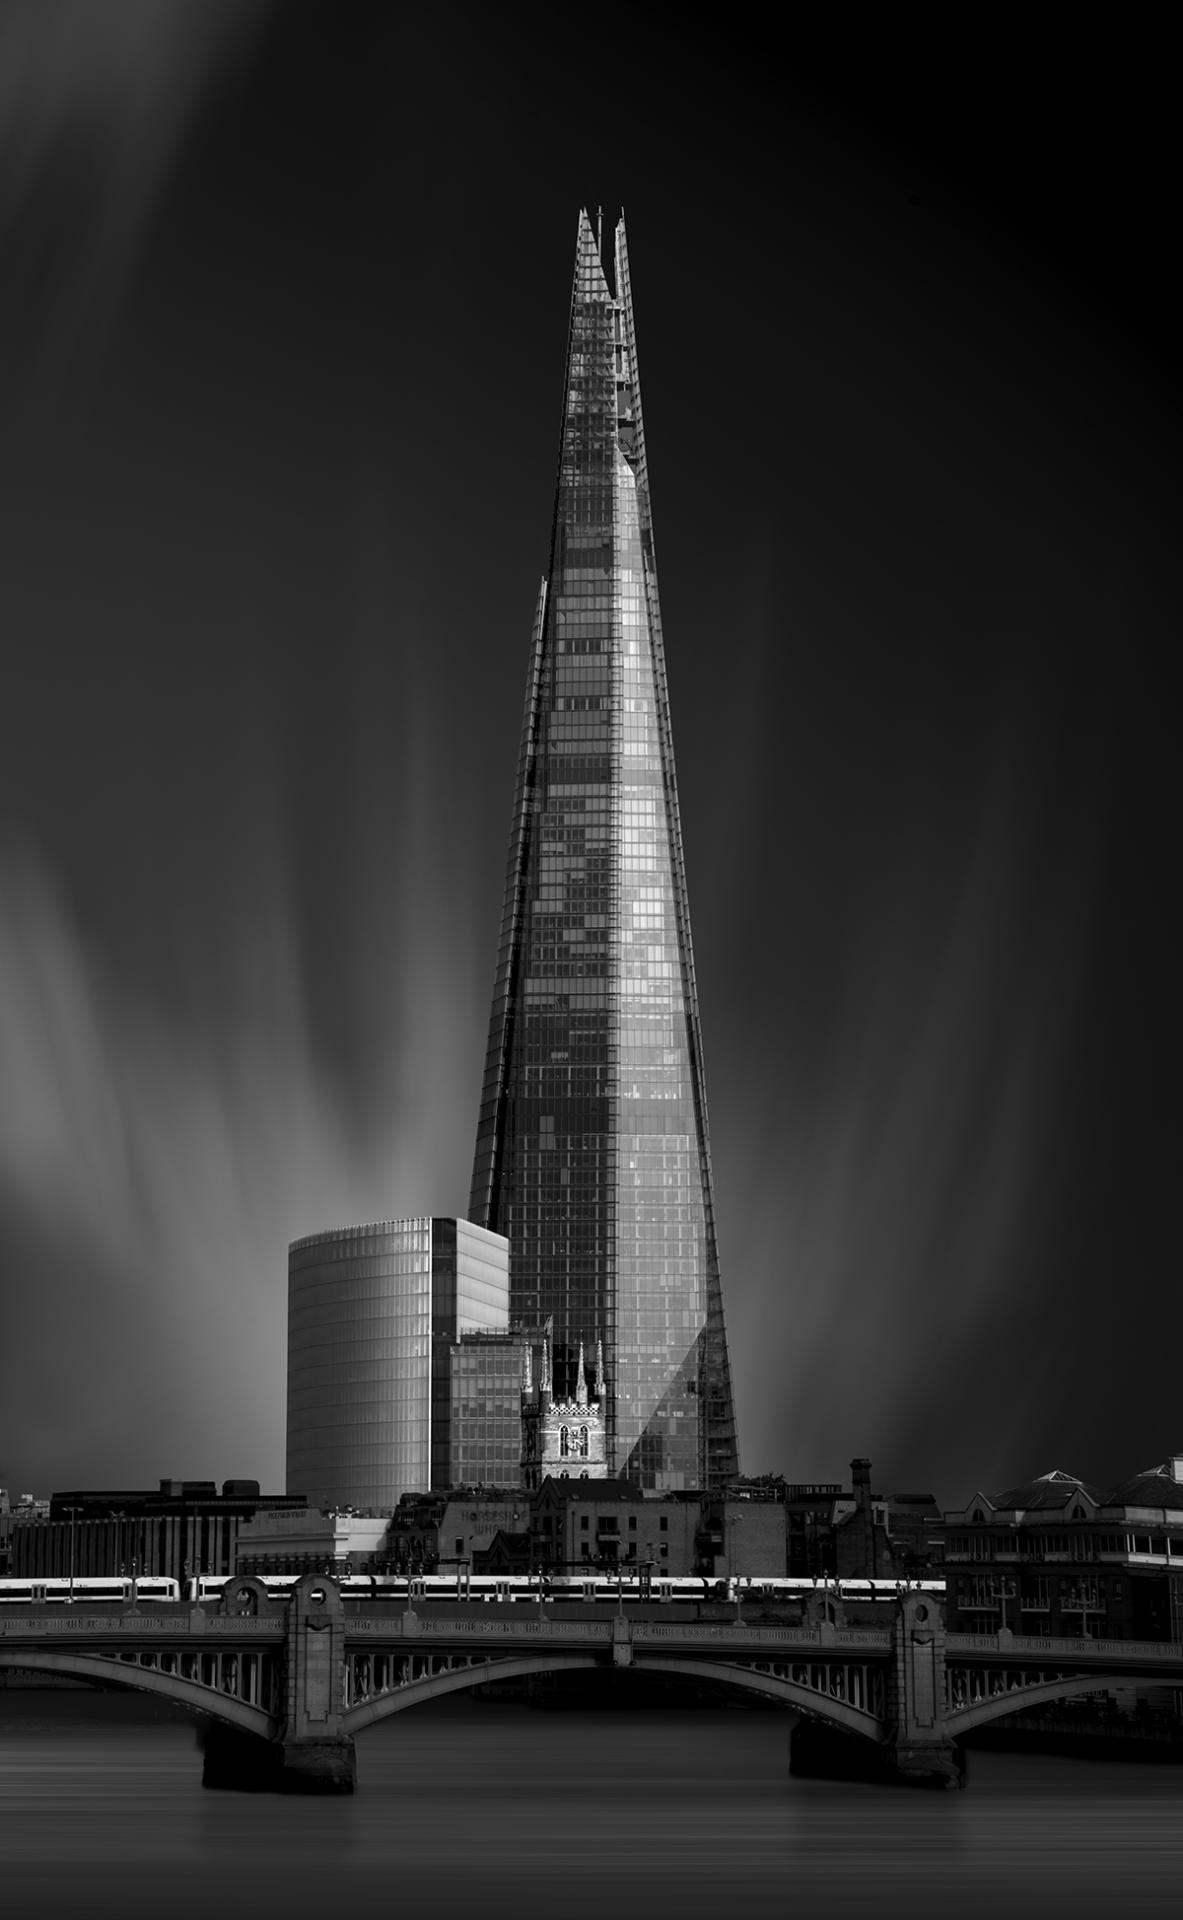 London Photography Awards Winner - The Shard